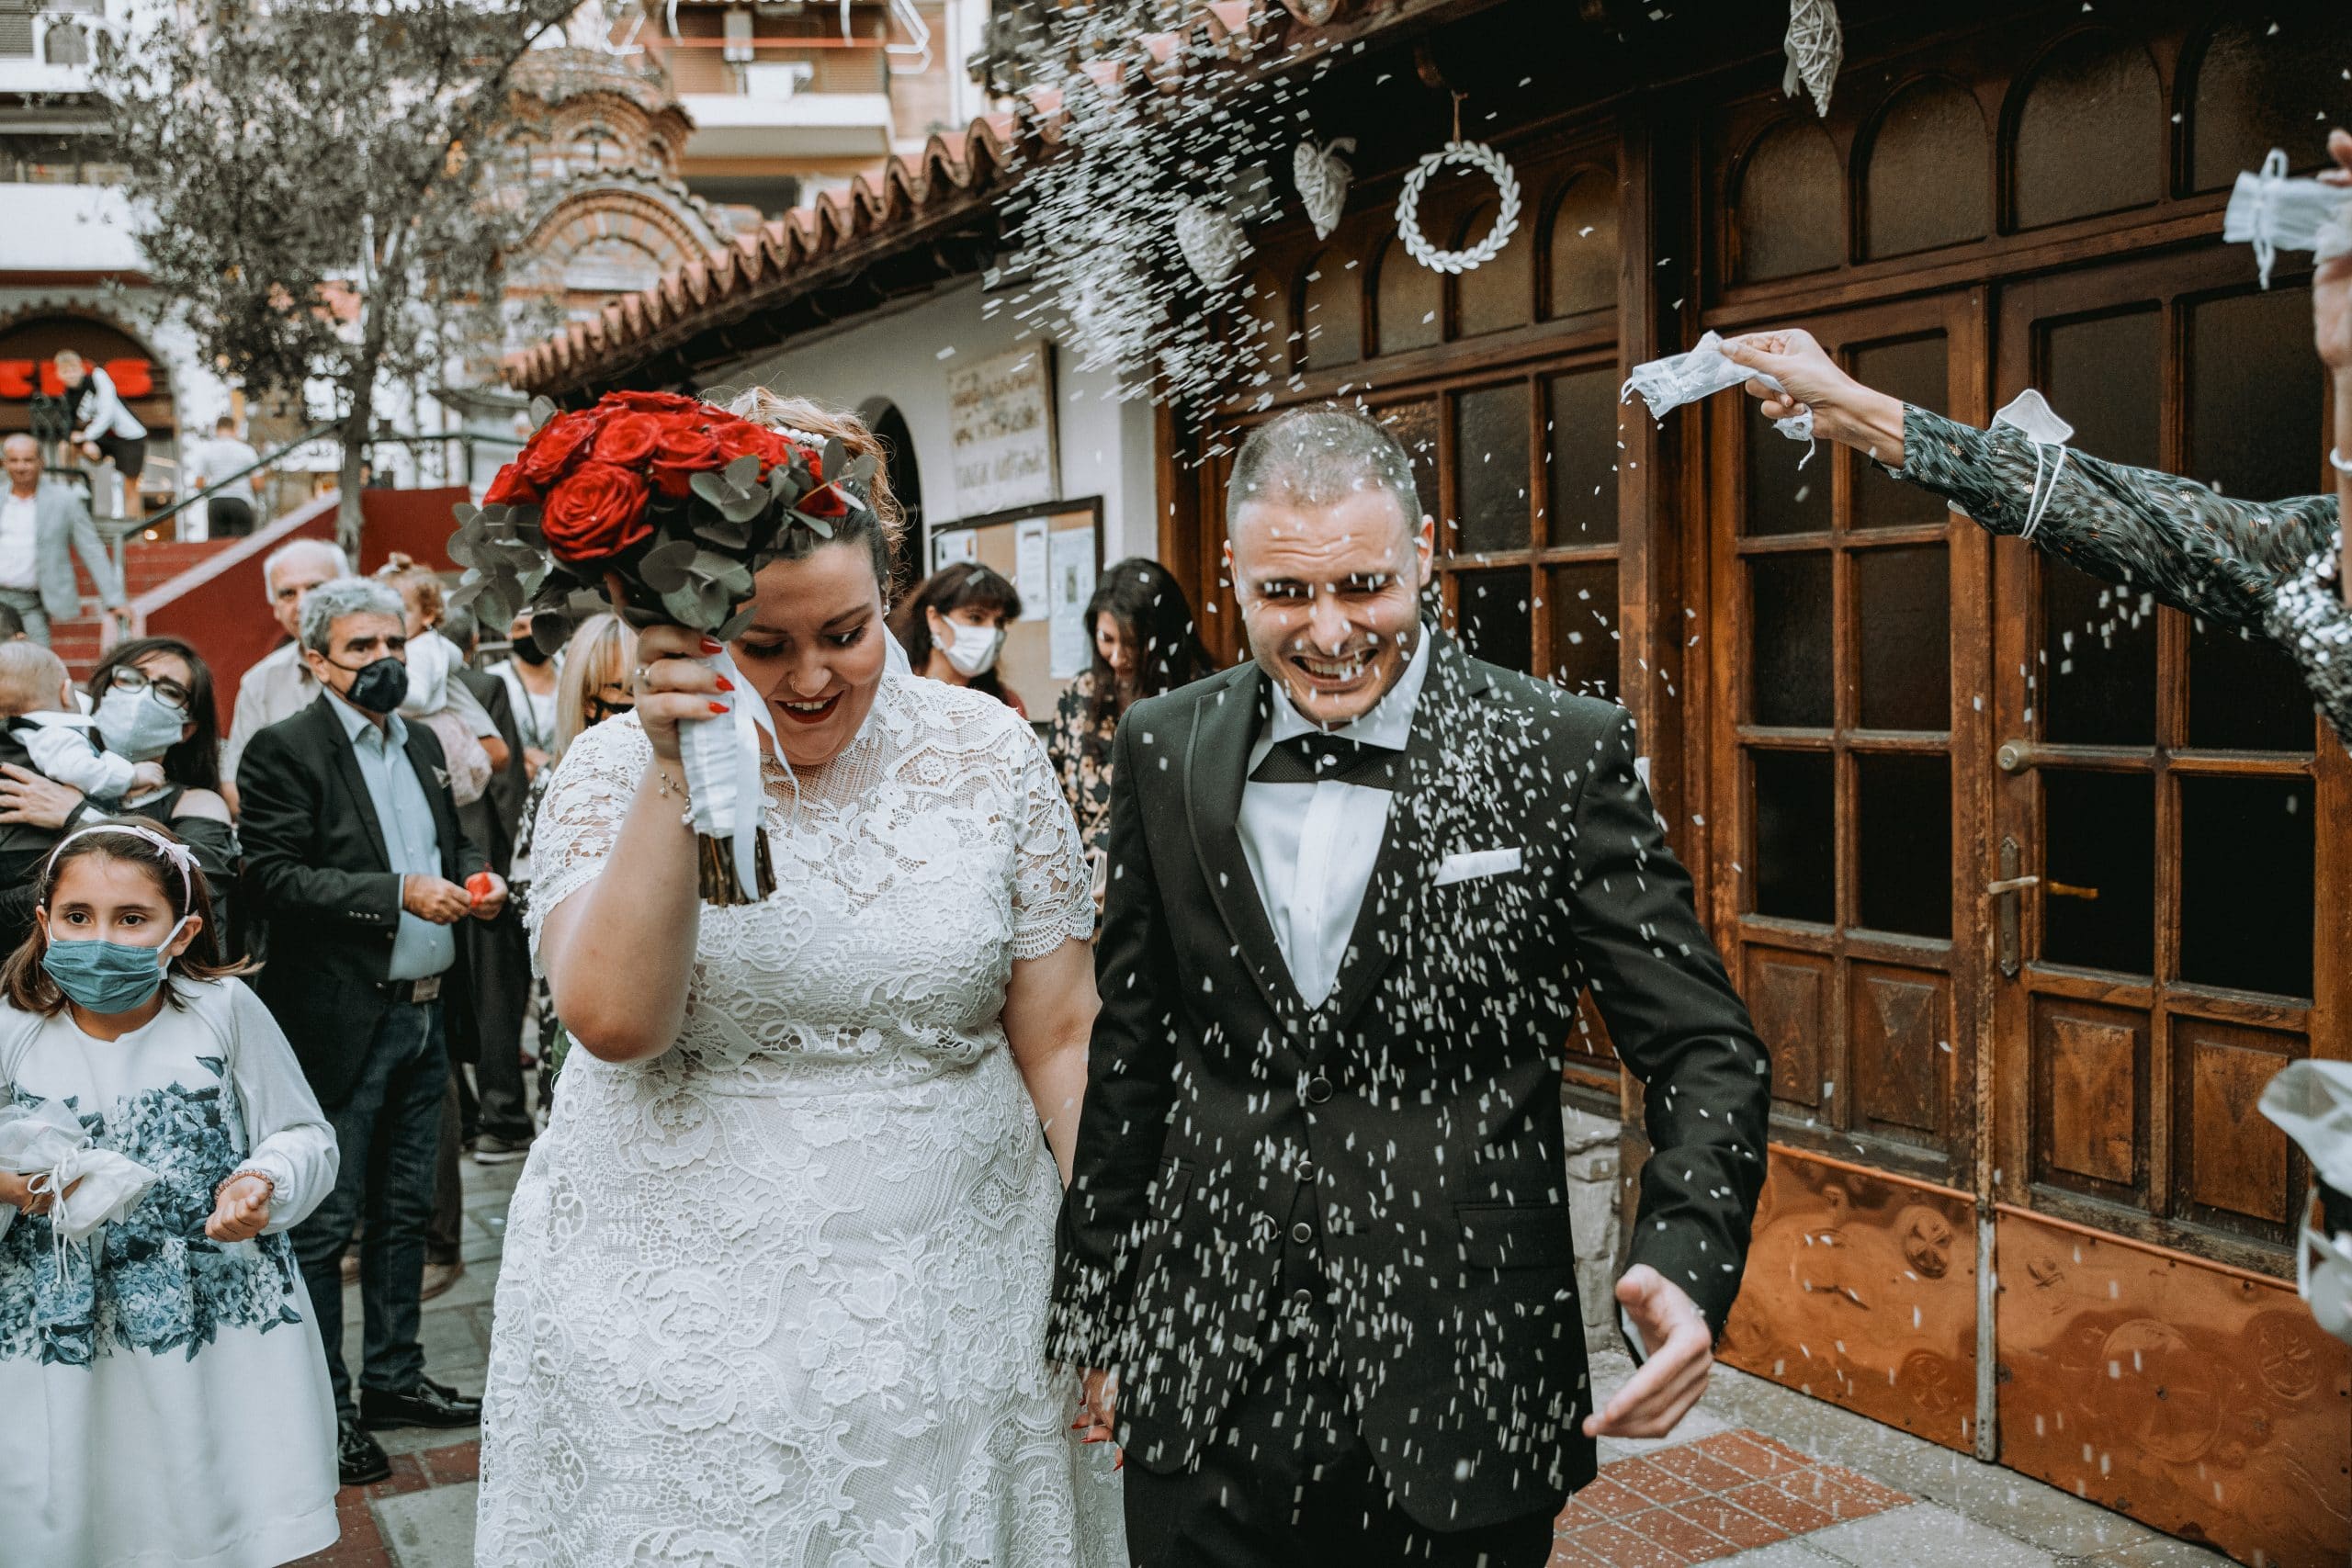 Φωτογραφία κατα την φωτογράφιση γάμου στην Θεσσαλονίκη, το ζευγάρι βγαίνει απο την εκκλησία και οι καλεσμένοι ρίχνουν ρύζι . Στην συγκεκριμένη φωτογραφία φαίνεται η χαρά της στιγμής . Ο γαμπρός φορά ενα μαυρο boss κοστούμι και η νύφη ενα ολόλευκο νυφικό και κρατά μια ανθοδέσμη με κόκκινα άνθη. Φωτογράφος Γιώργος Καρασαββίδης gkphotography